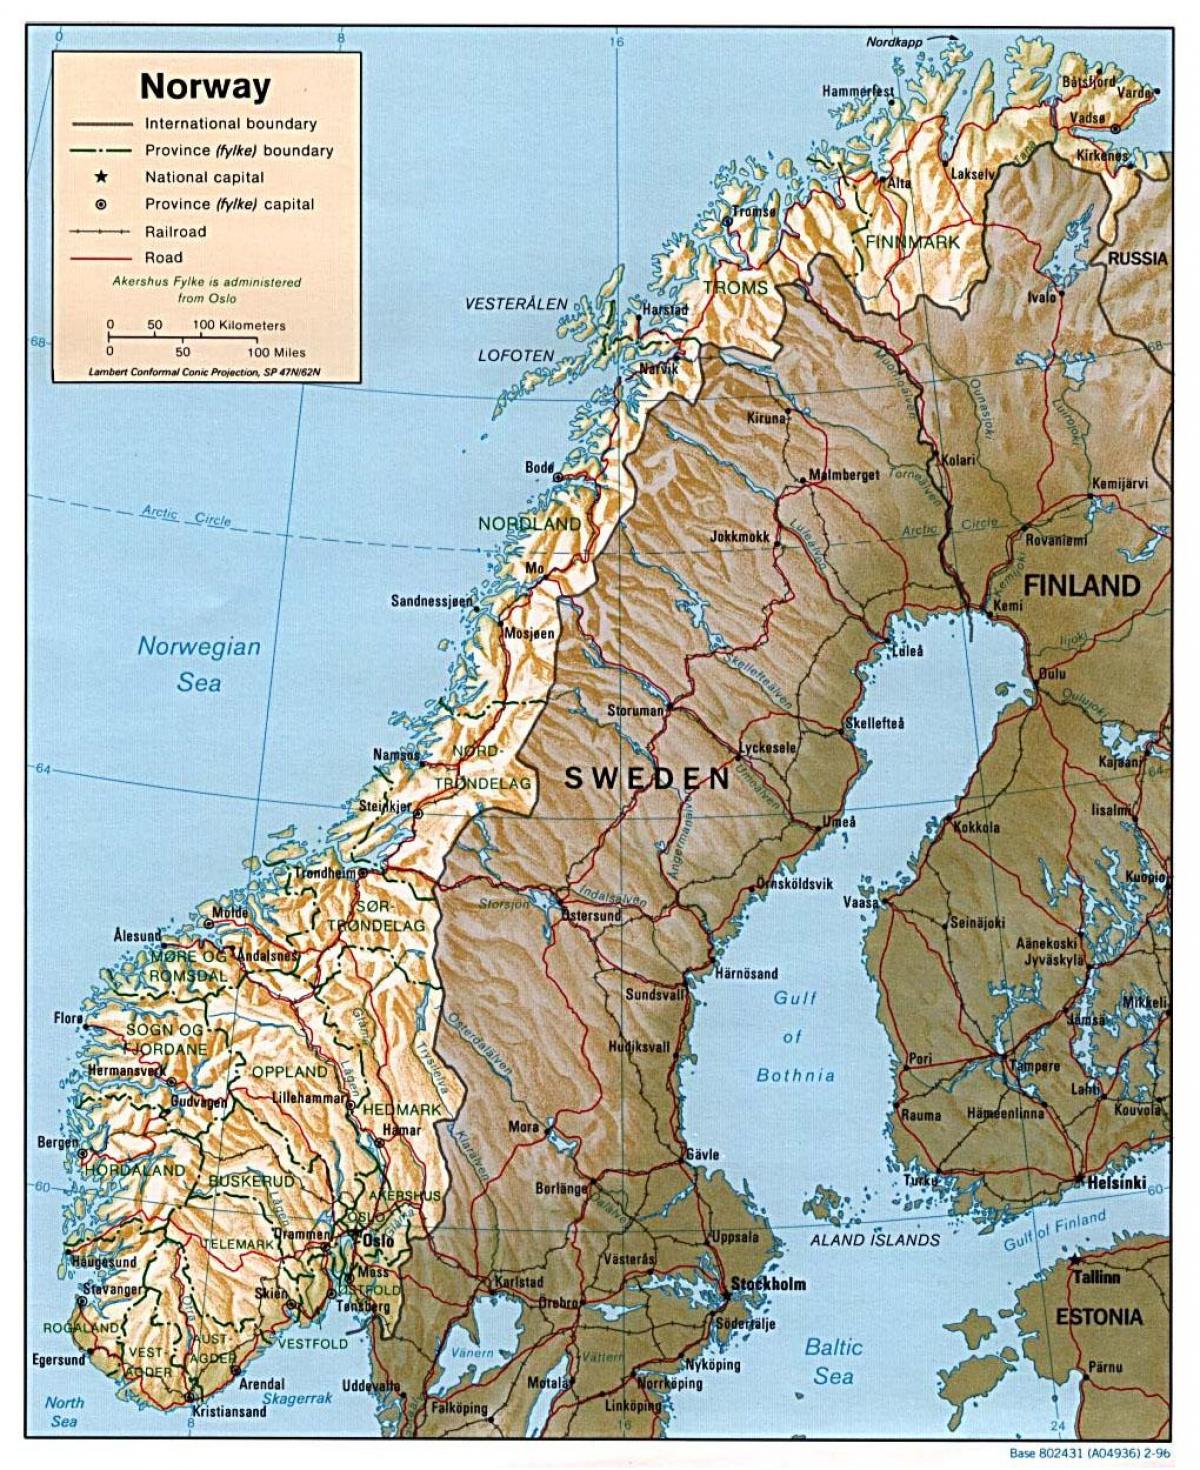 λεπτομερής χάρτης της Νορβηγίας με τις πόλεις